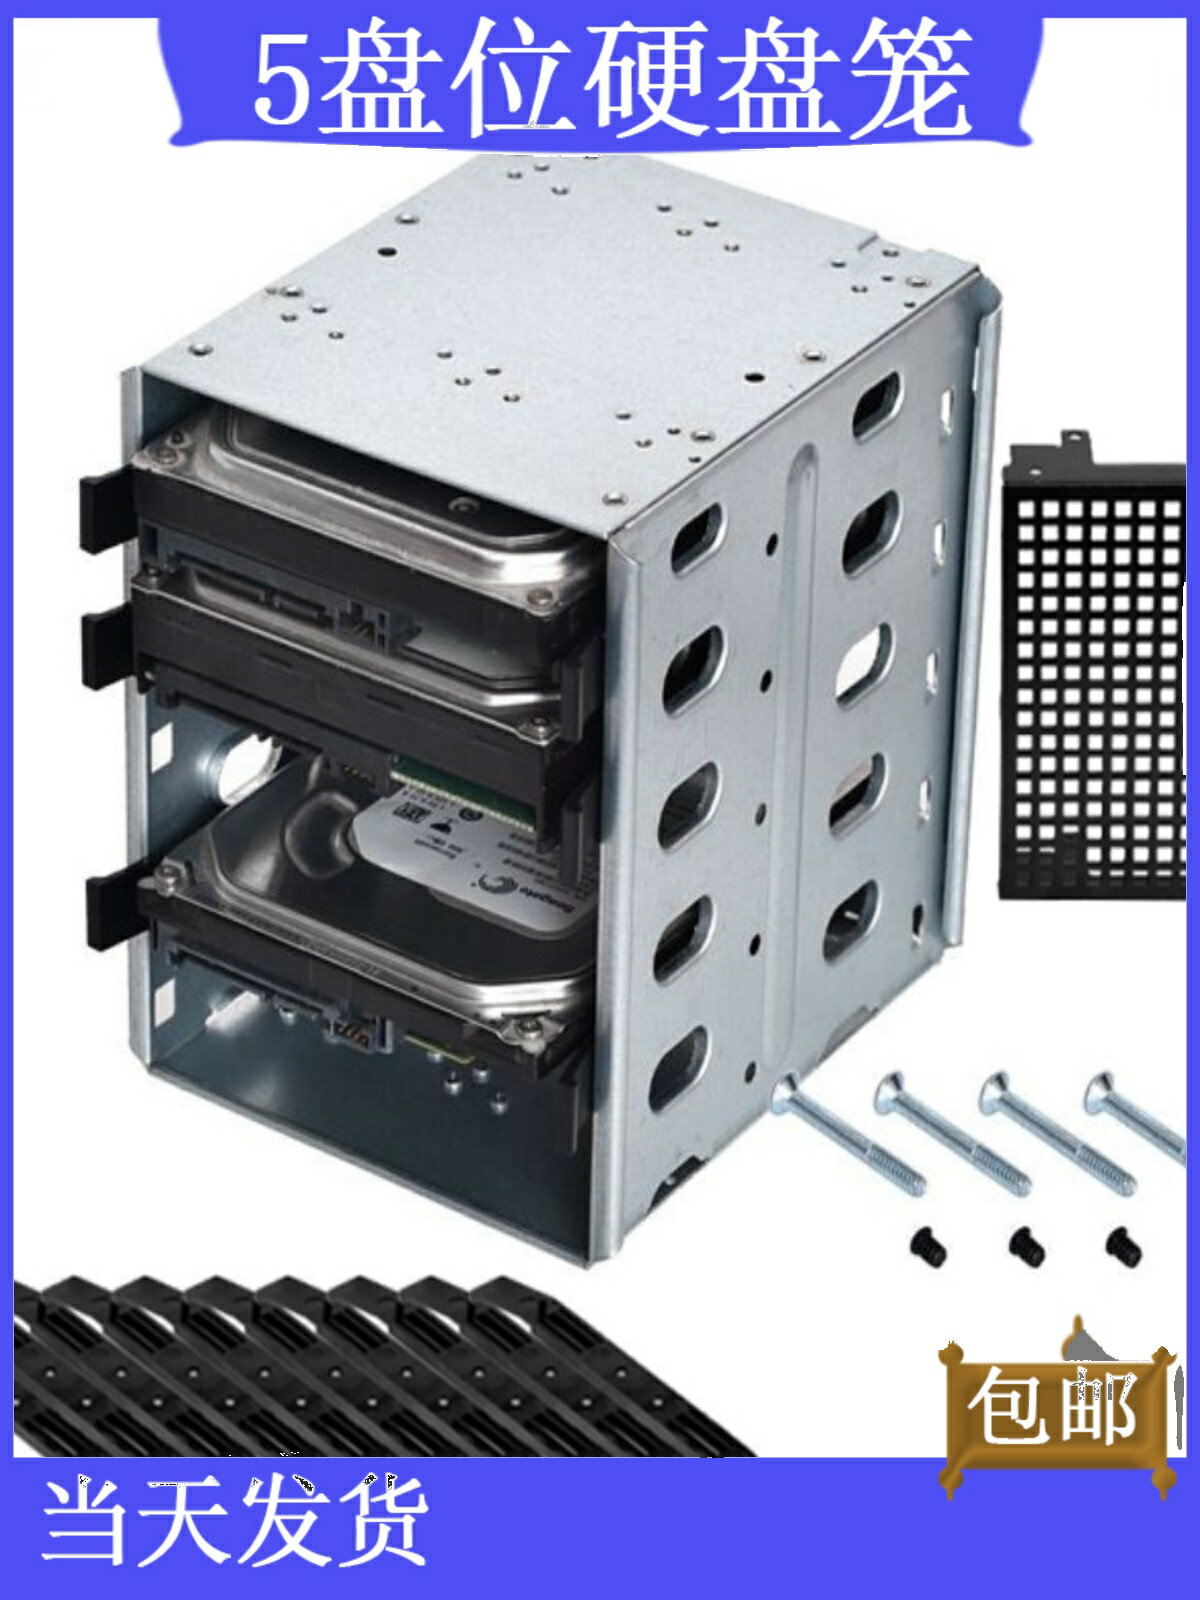 臺式機5盤位硬盤籠免螺絲3光驅位機箱3.5寸硬盤擴展架DIY存儲收納